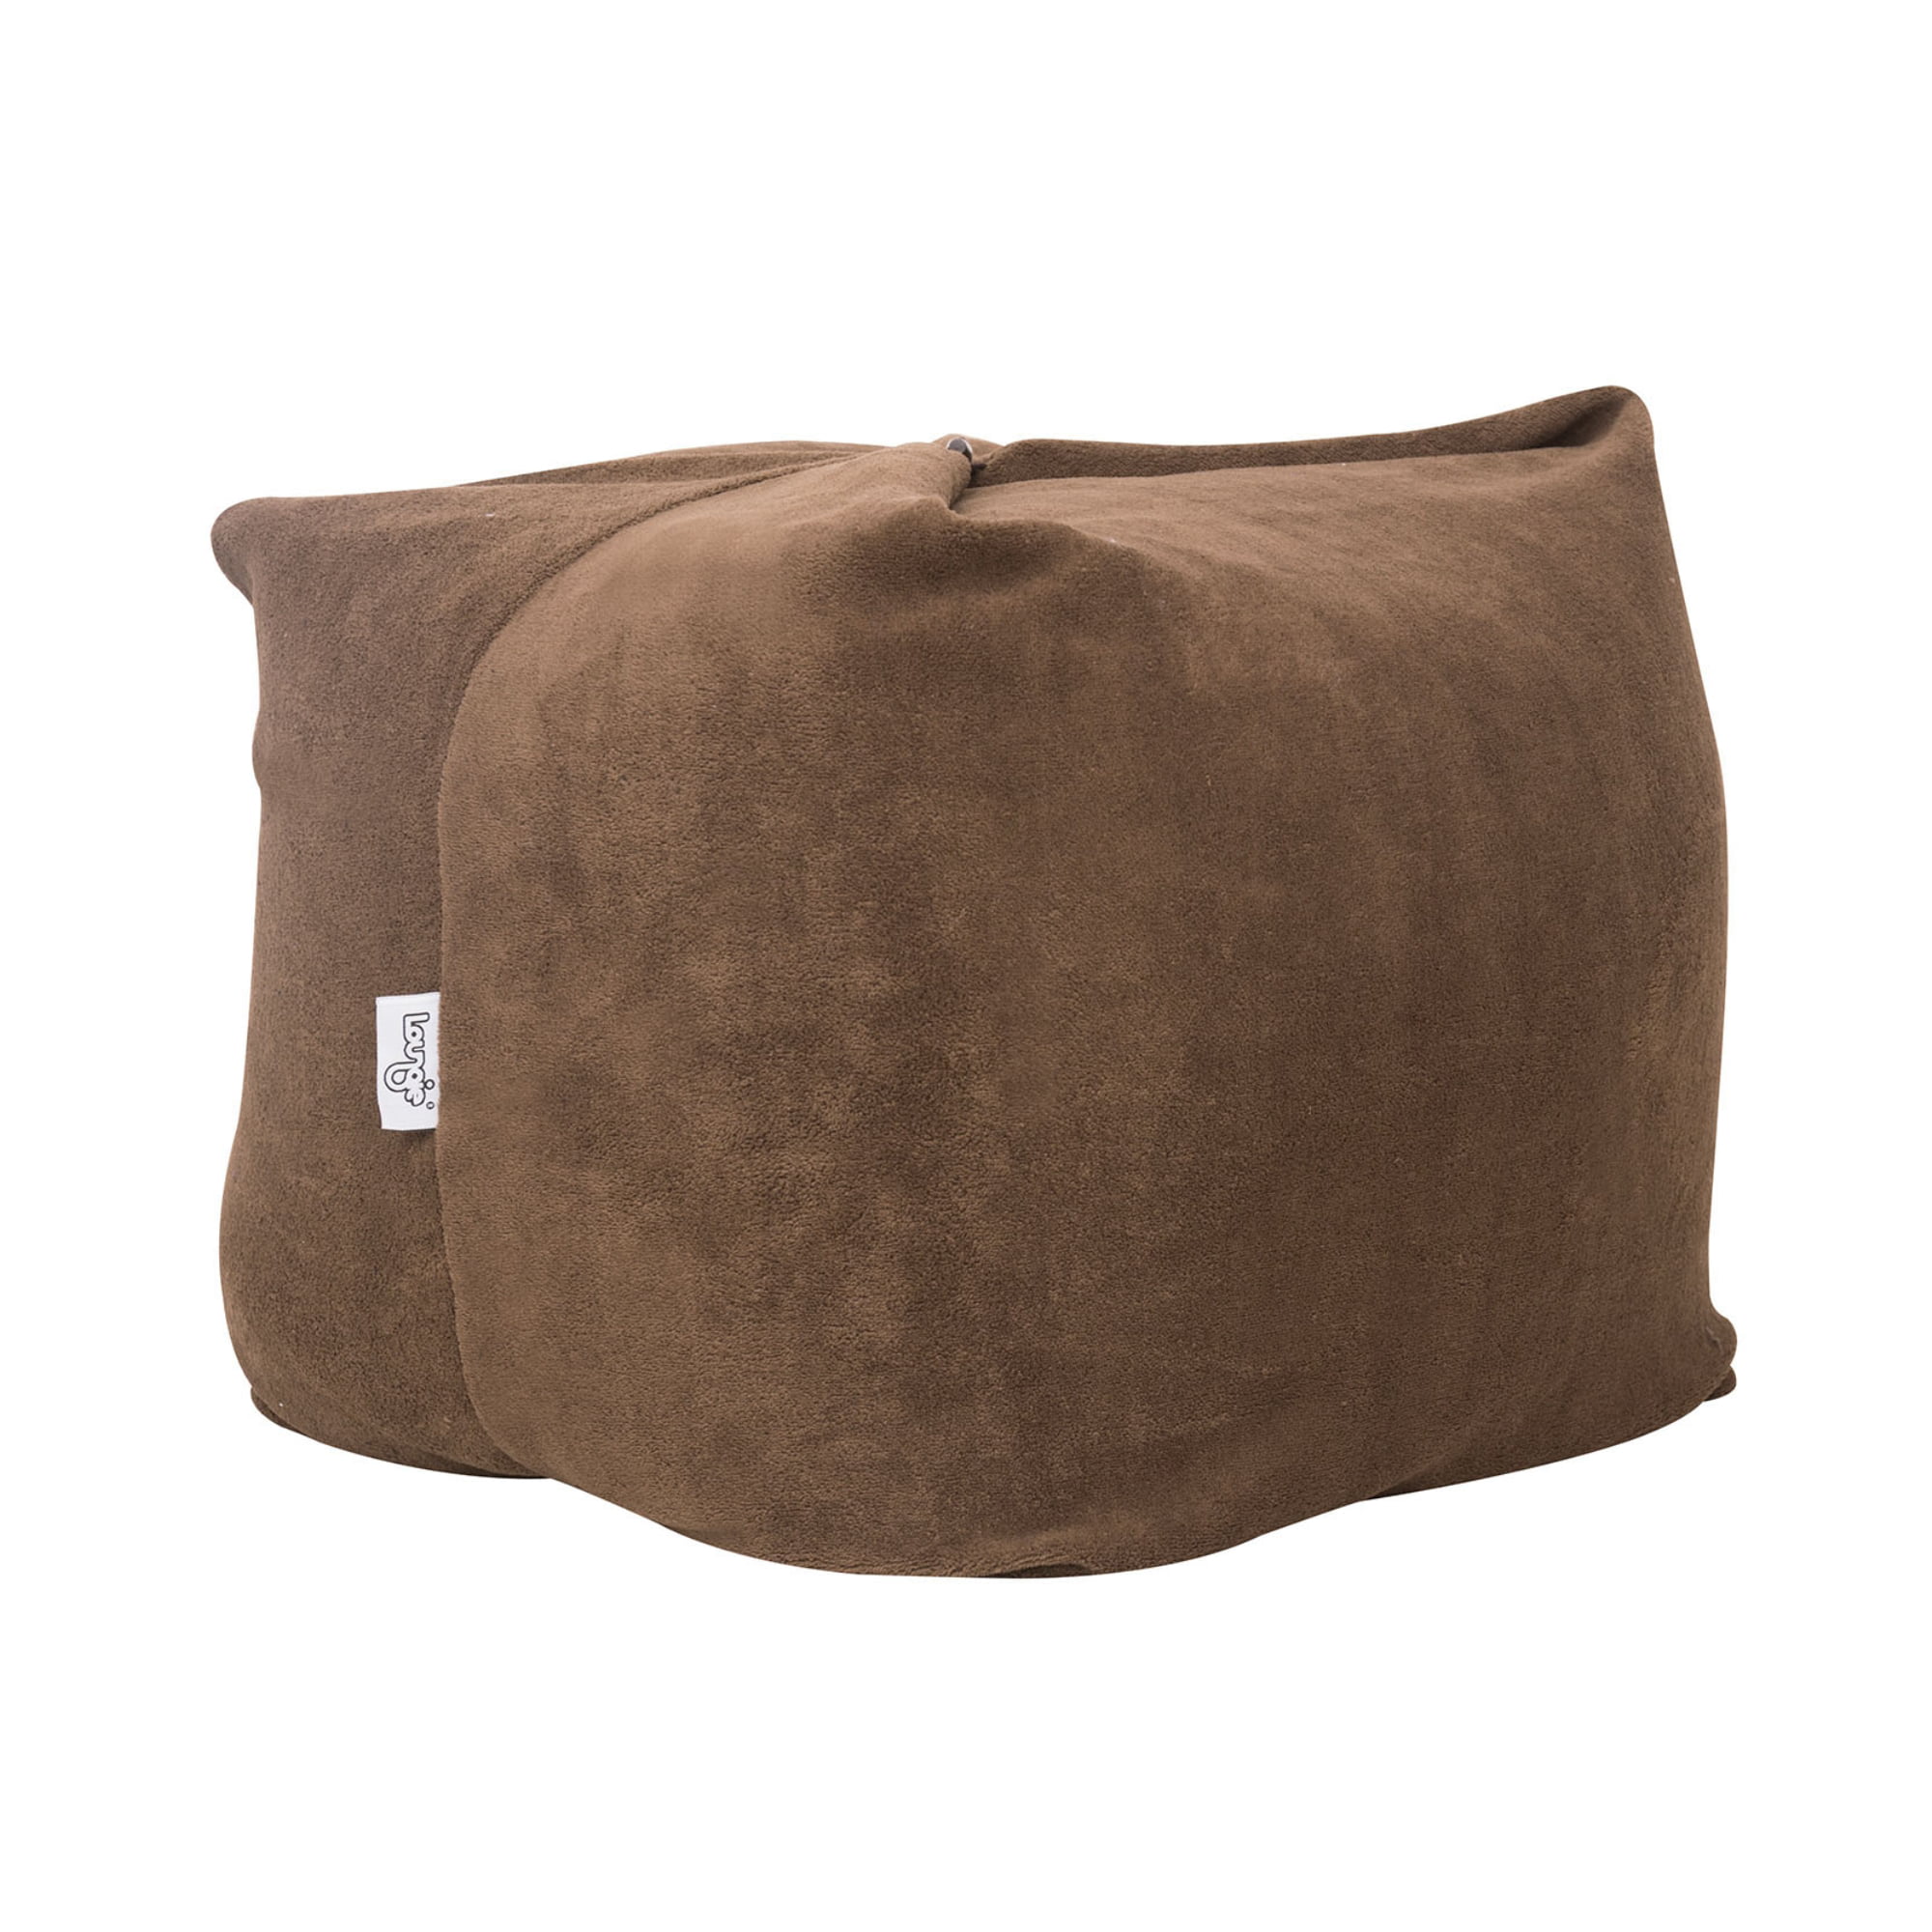 Loungie Magic Pouf Brown Microplush Bean Bag Chair Convertible